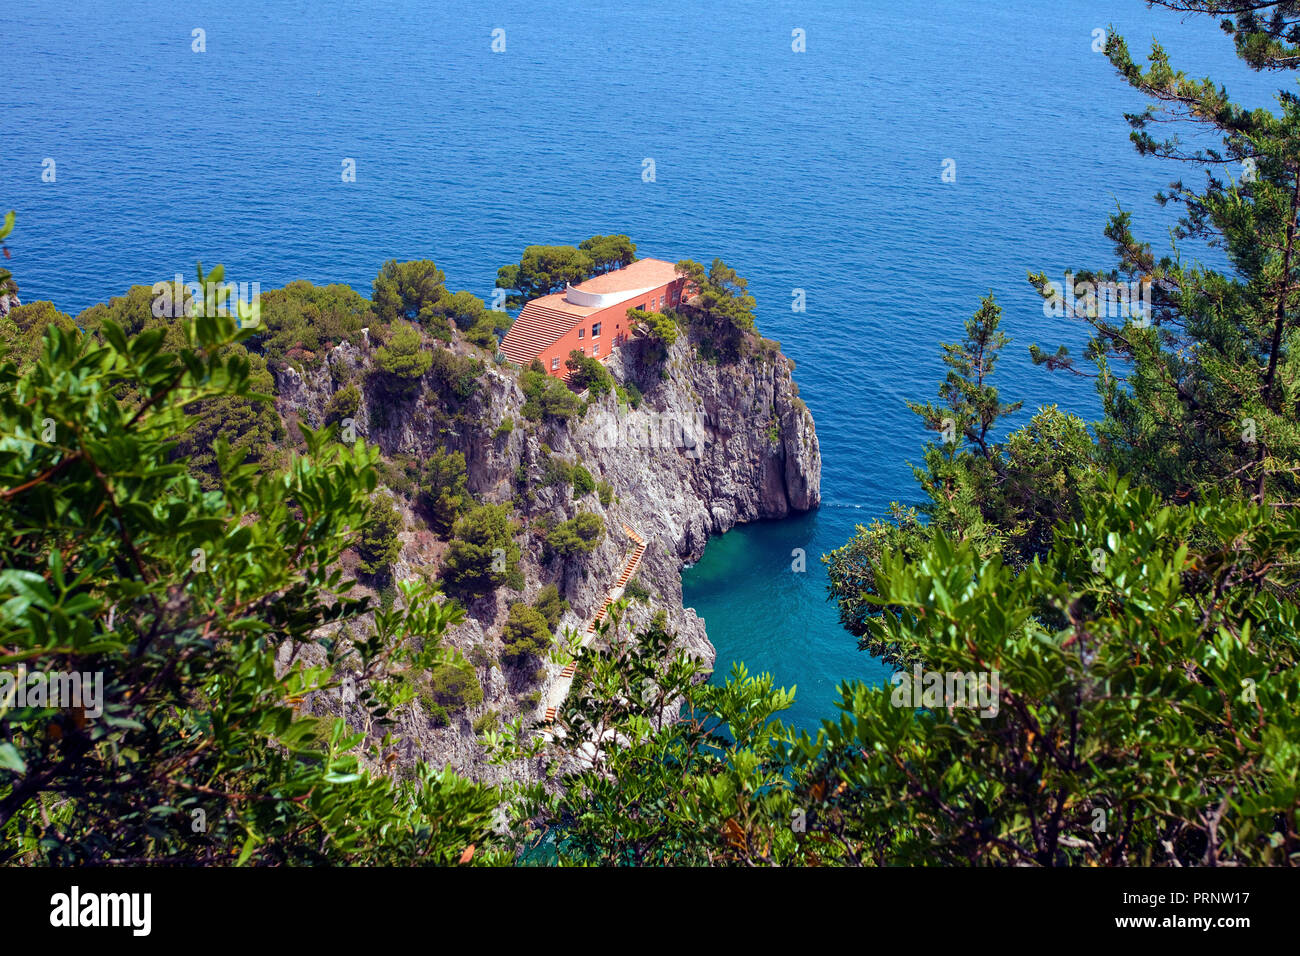 View on Villa Malaparte, Casa come me, Punta Masullo, Capri, island, Gulf of Naples, Campania, Italy Stock Photo